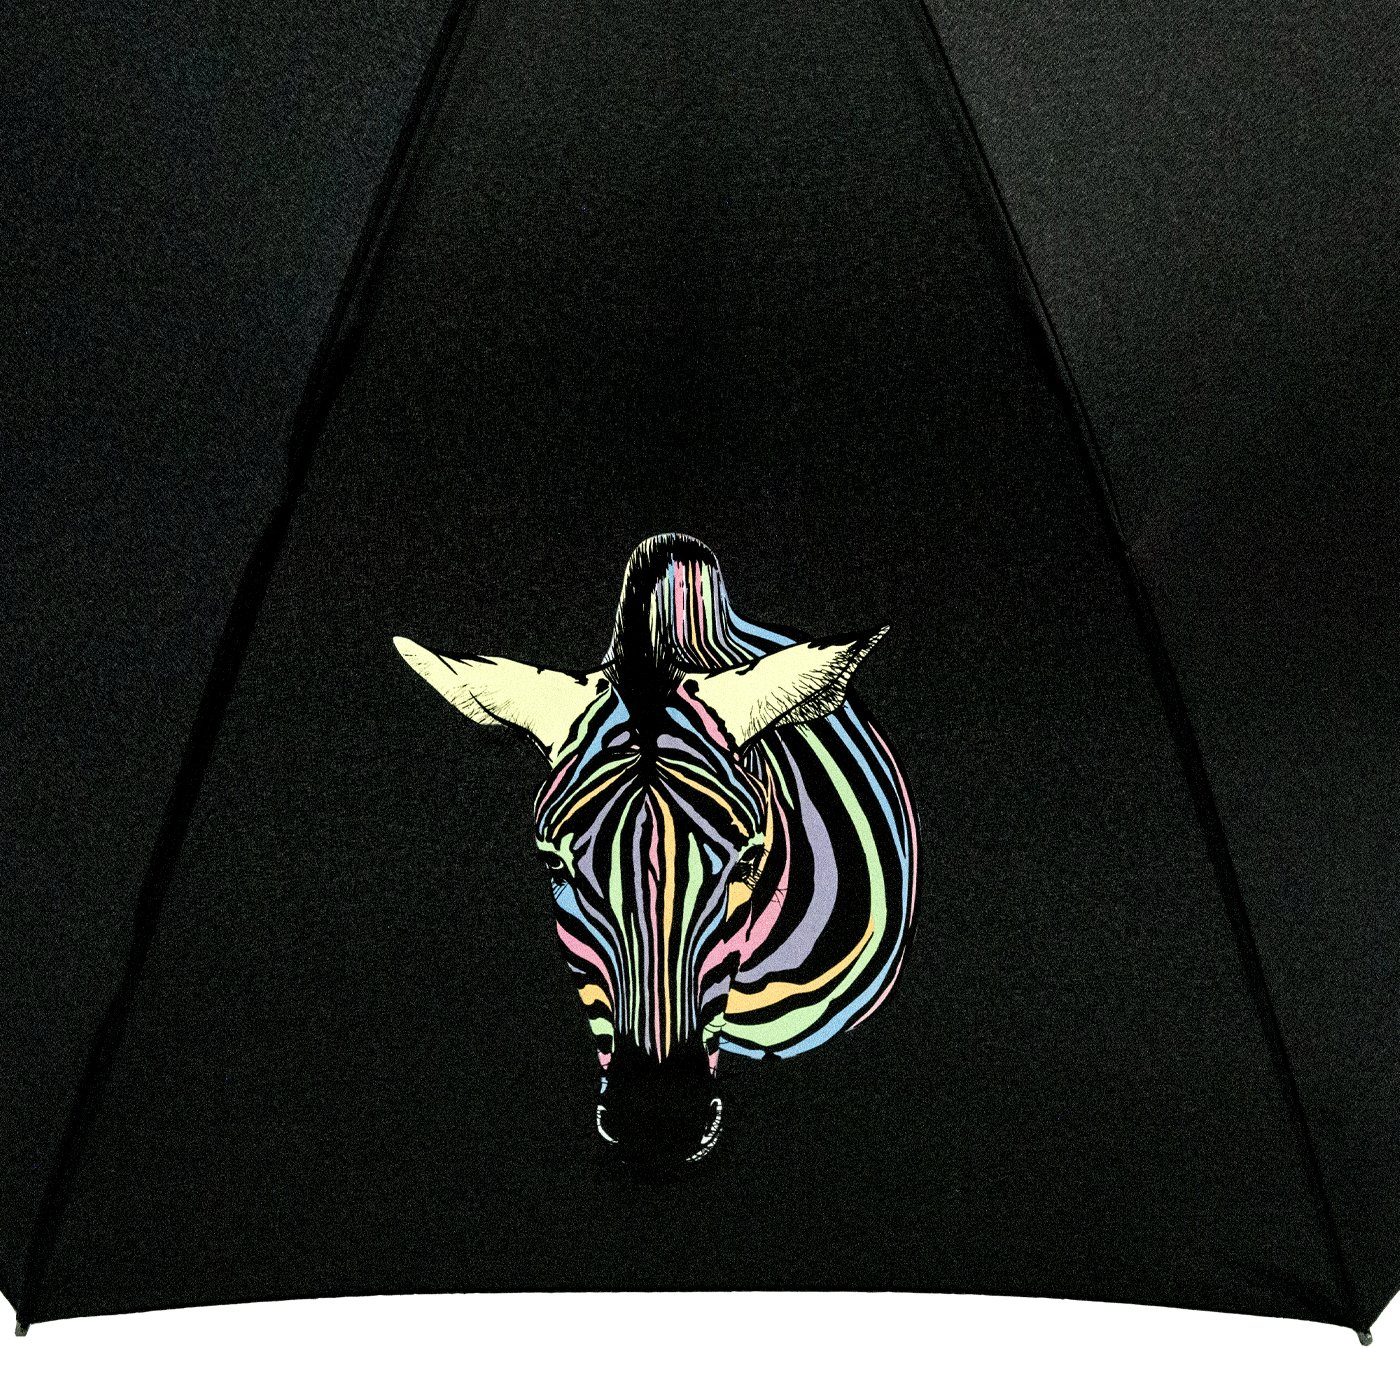 und Nässe Zebra Auf-Automatik Langregenschirm Farbwechsel Wow-Effekt, Damen-Regenschirm mit - Impliva Wetprint bei